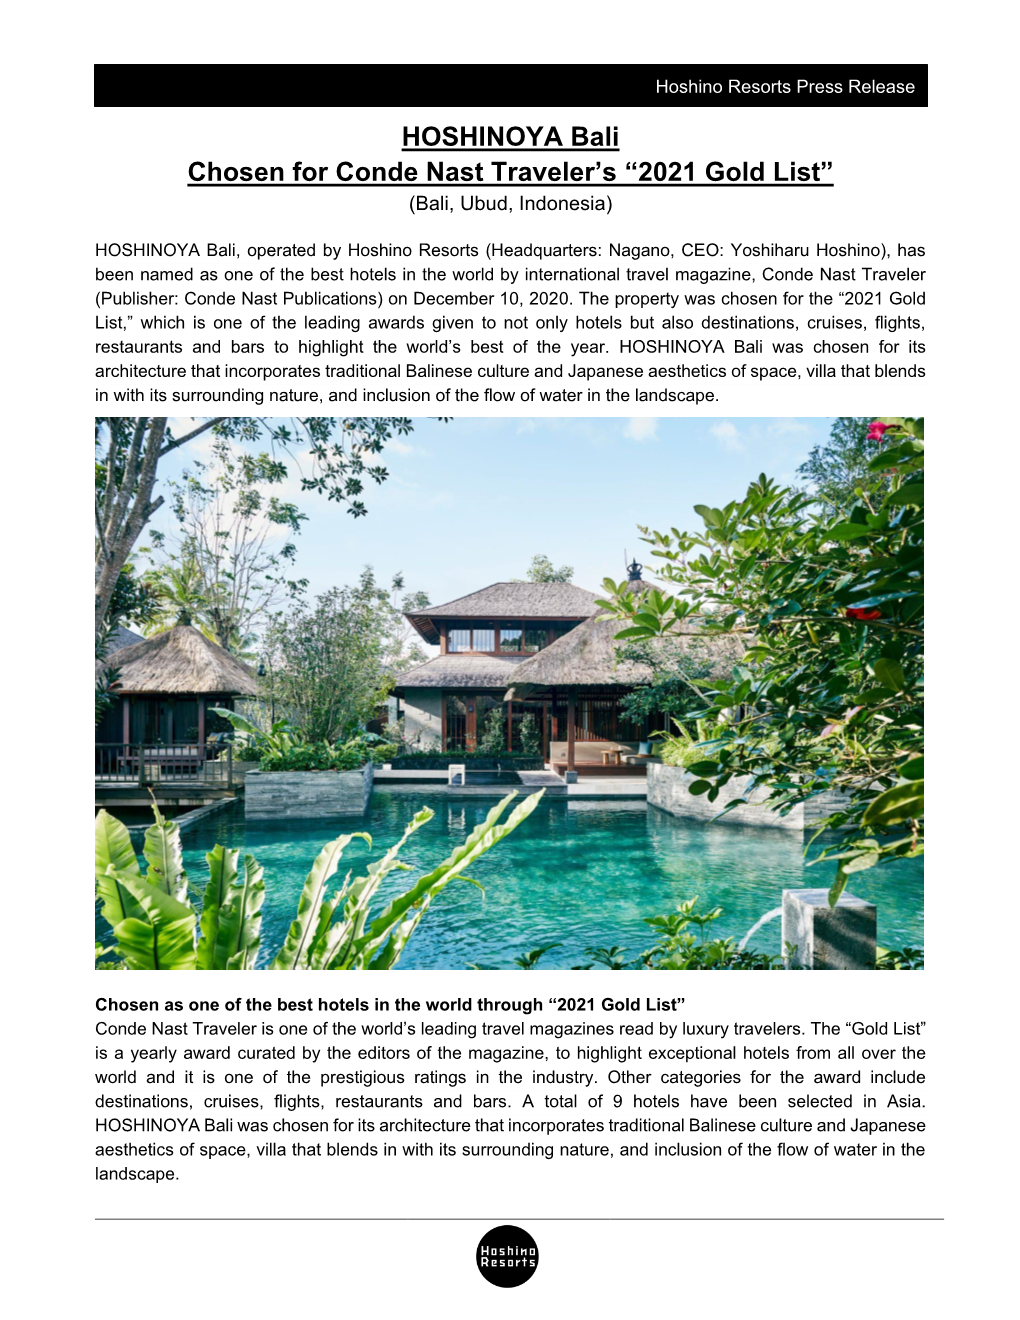 HOSHINOYA Bali Chosen for Conde Nast Traveler's “2021 Gold List”